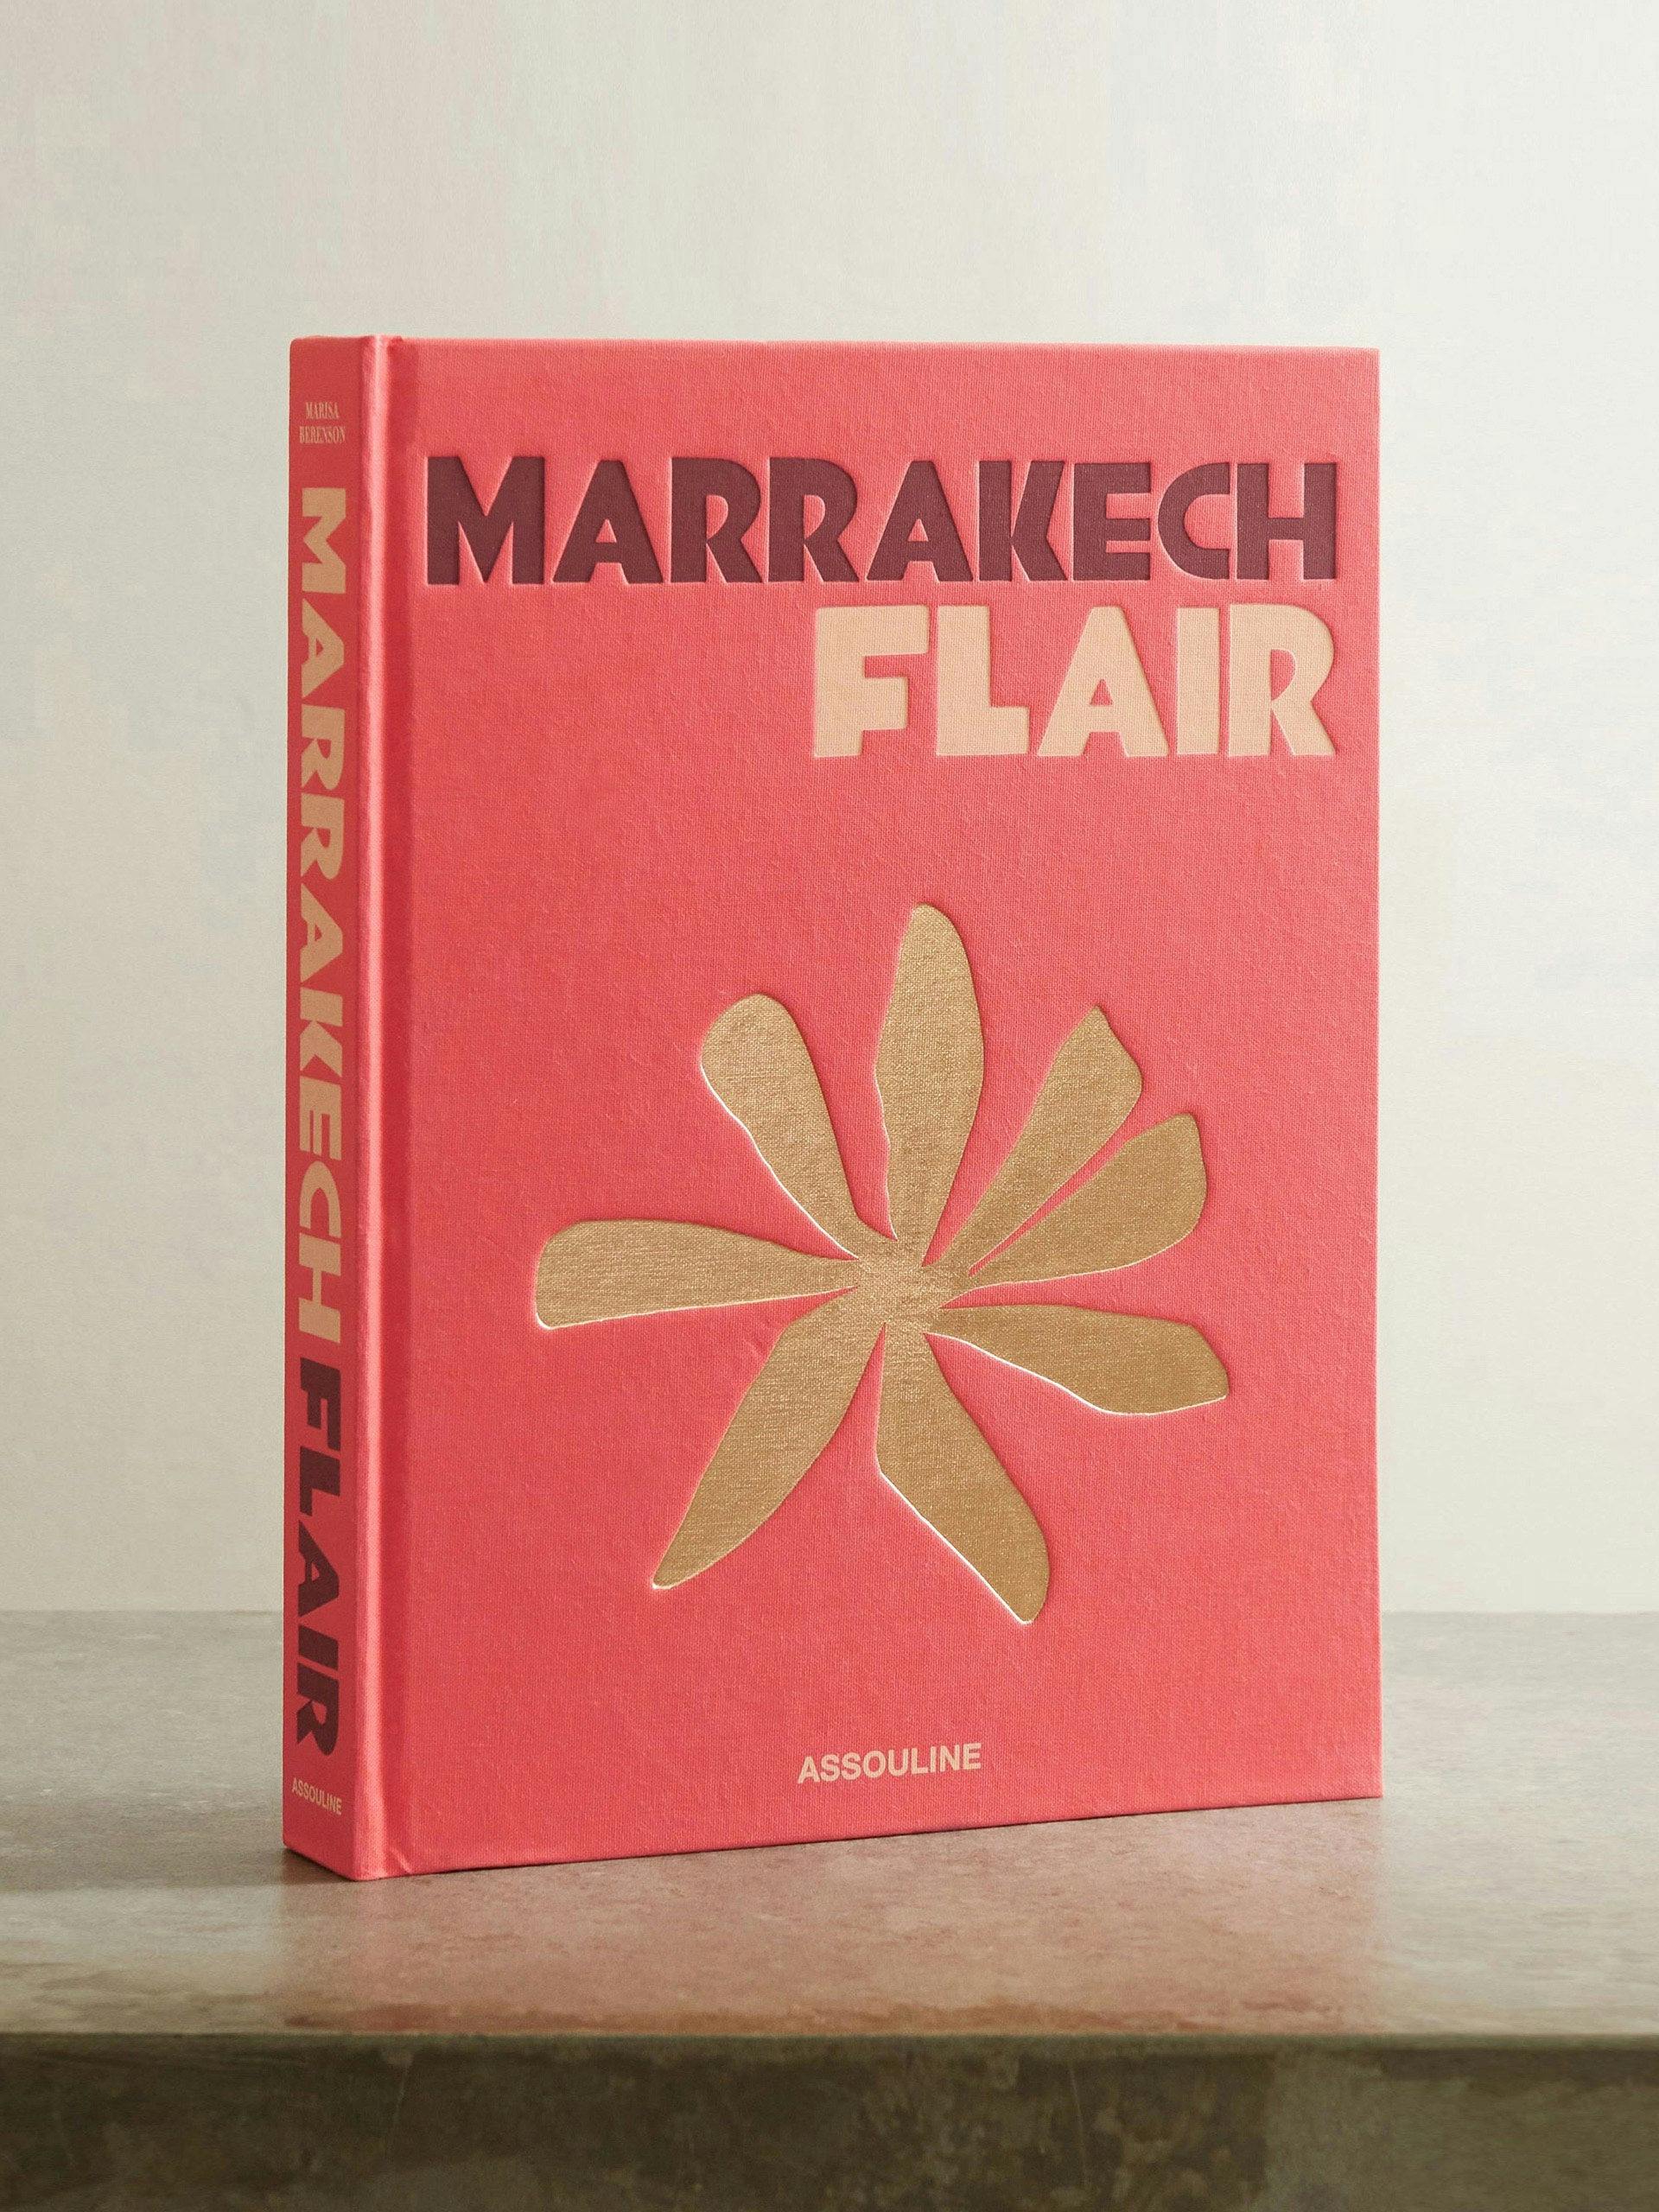 Marrakech Flair hardcover book